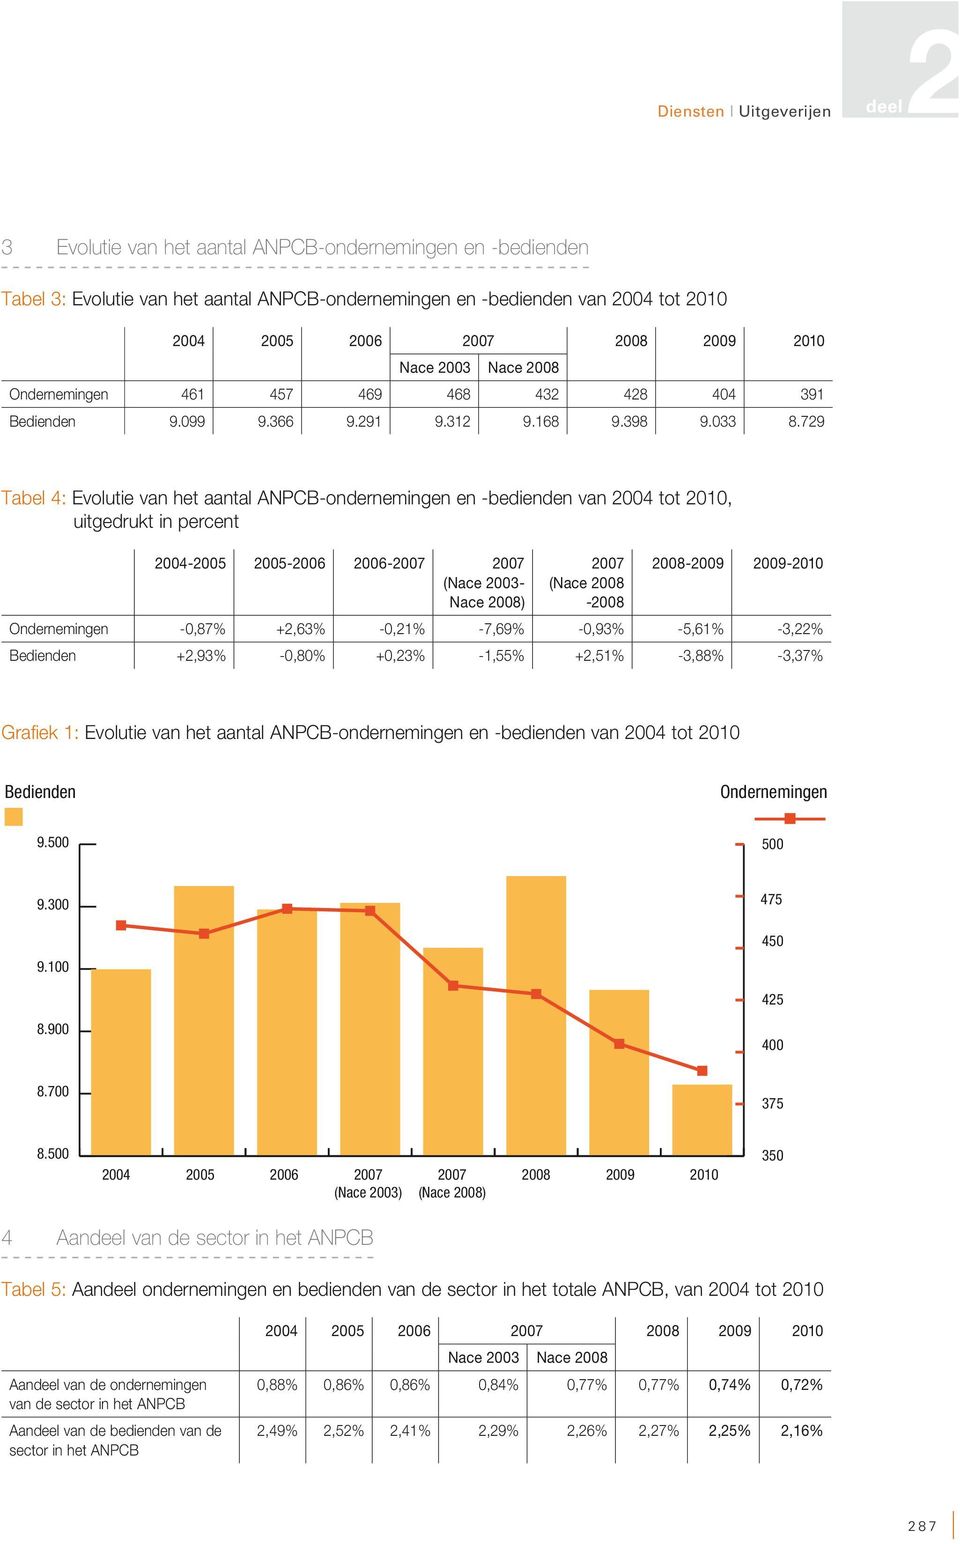 729 Tabel 4: Evolutie van het aantal ANPCB-ondernemingen en -bedienden van 2004 tot 2010, uitgedrukt in percent 2004-2005 2005-2006 2006-2007 2007 (Nace 2003- Nace 2008) 2007 (Nace 2008-2008